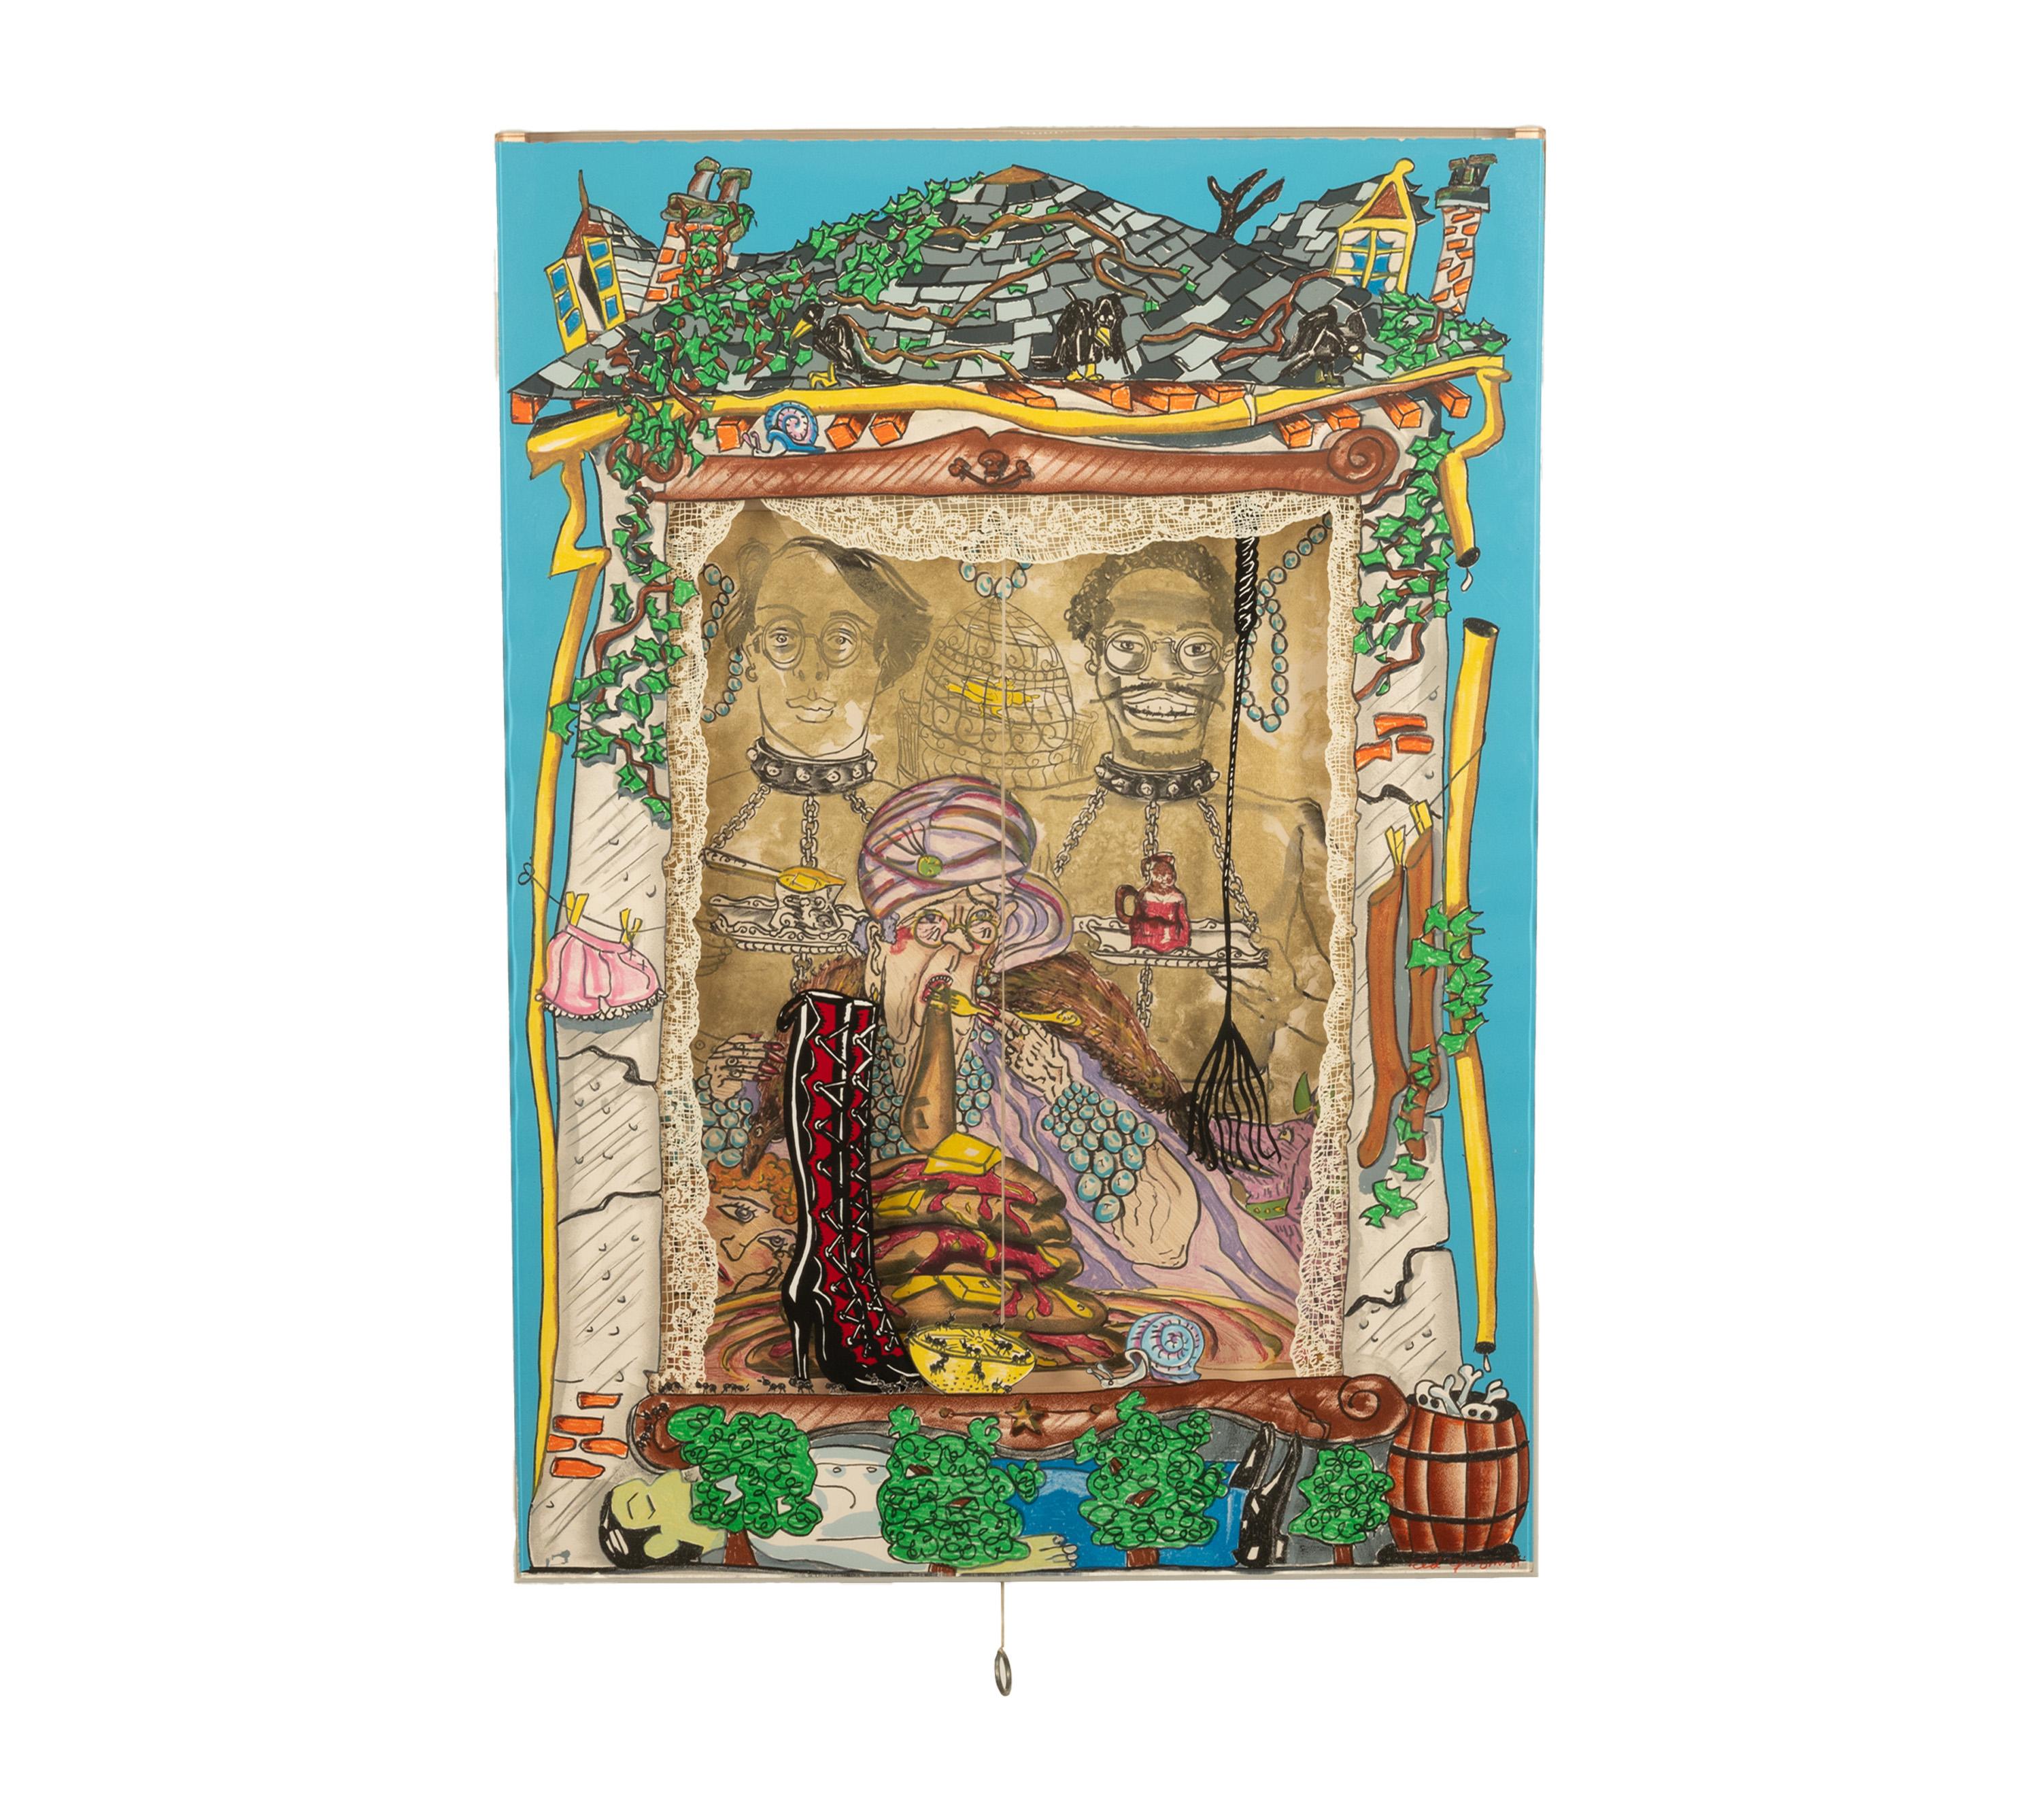 The Pancake Eater, 1981 de Red Grooms (n. 1937), Prueba de Artista, 2 de 9 (aparte de la edición de 31).
Litografía y serigrafía multicapa en 31 colores con polvo de resplandor dorado.
Collage recortado y persiana de vinilo con cordón de tracción en